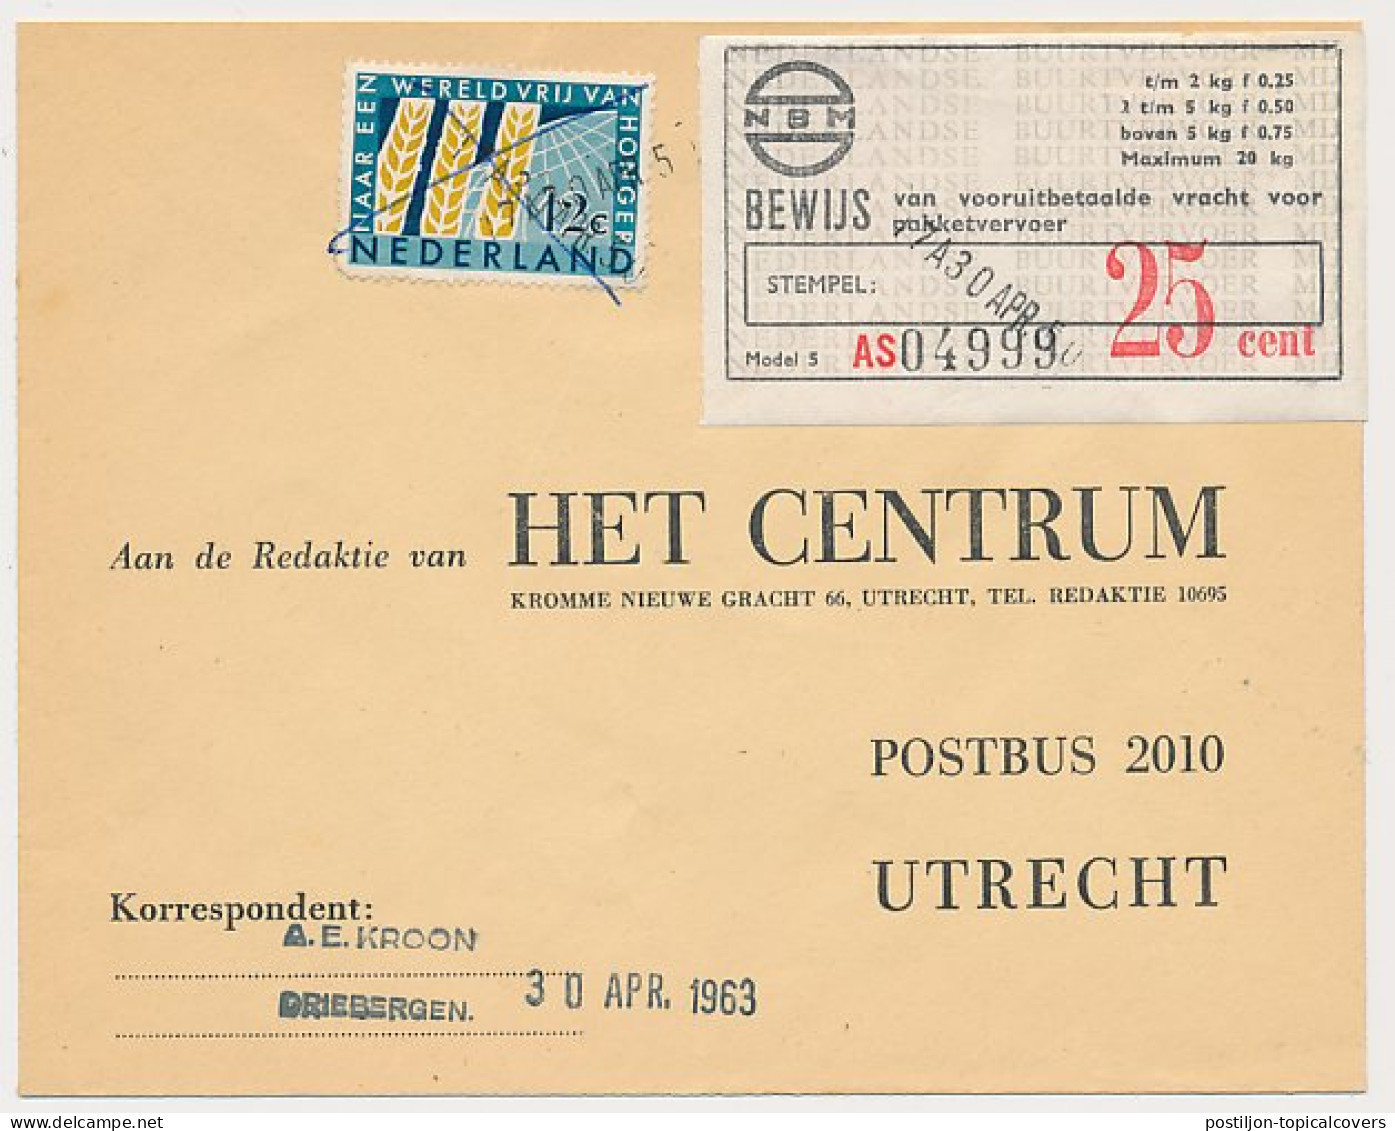 Driebergen - Utrecht 1963 - NBM Vrachtbewijs 25 Cent - Unclassified